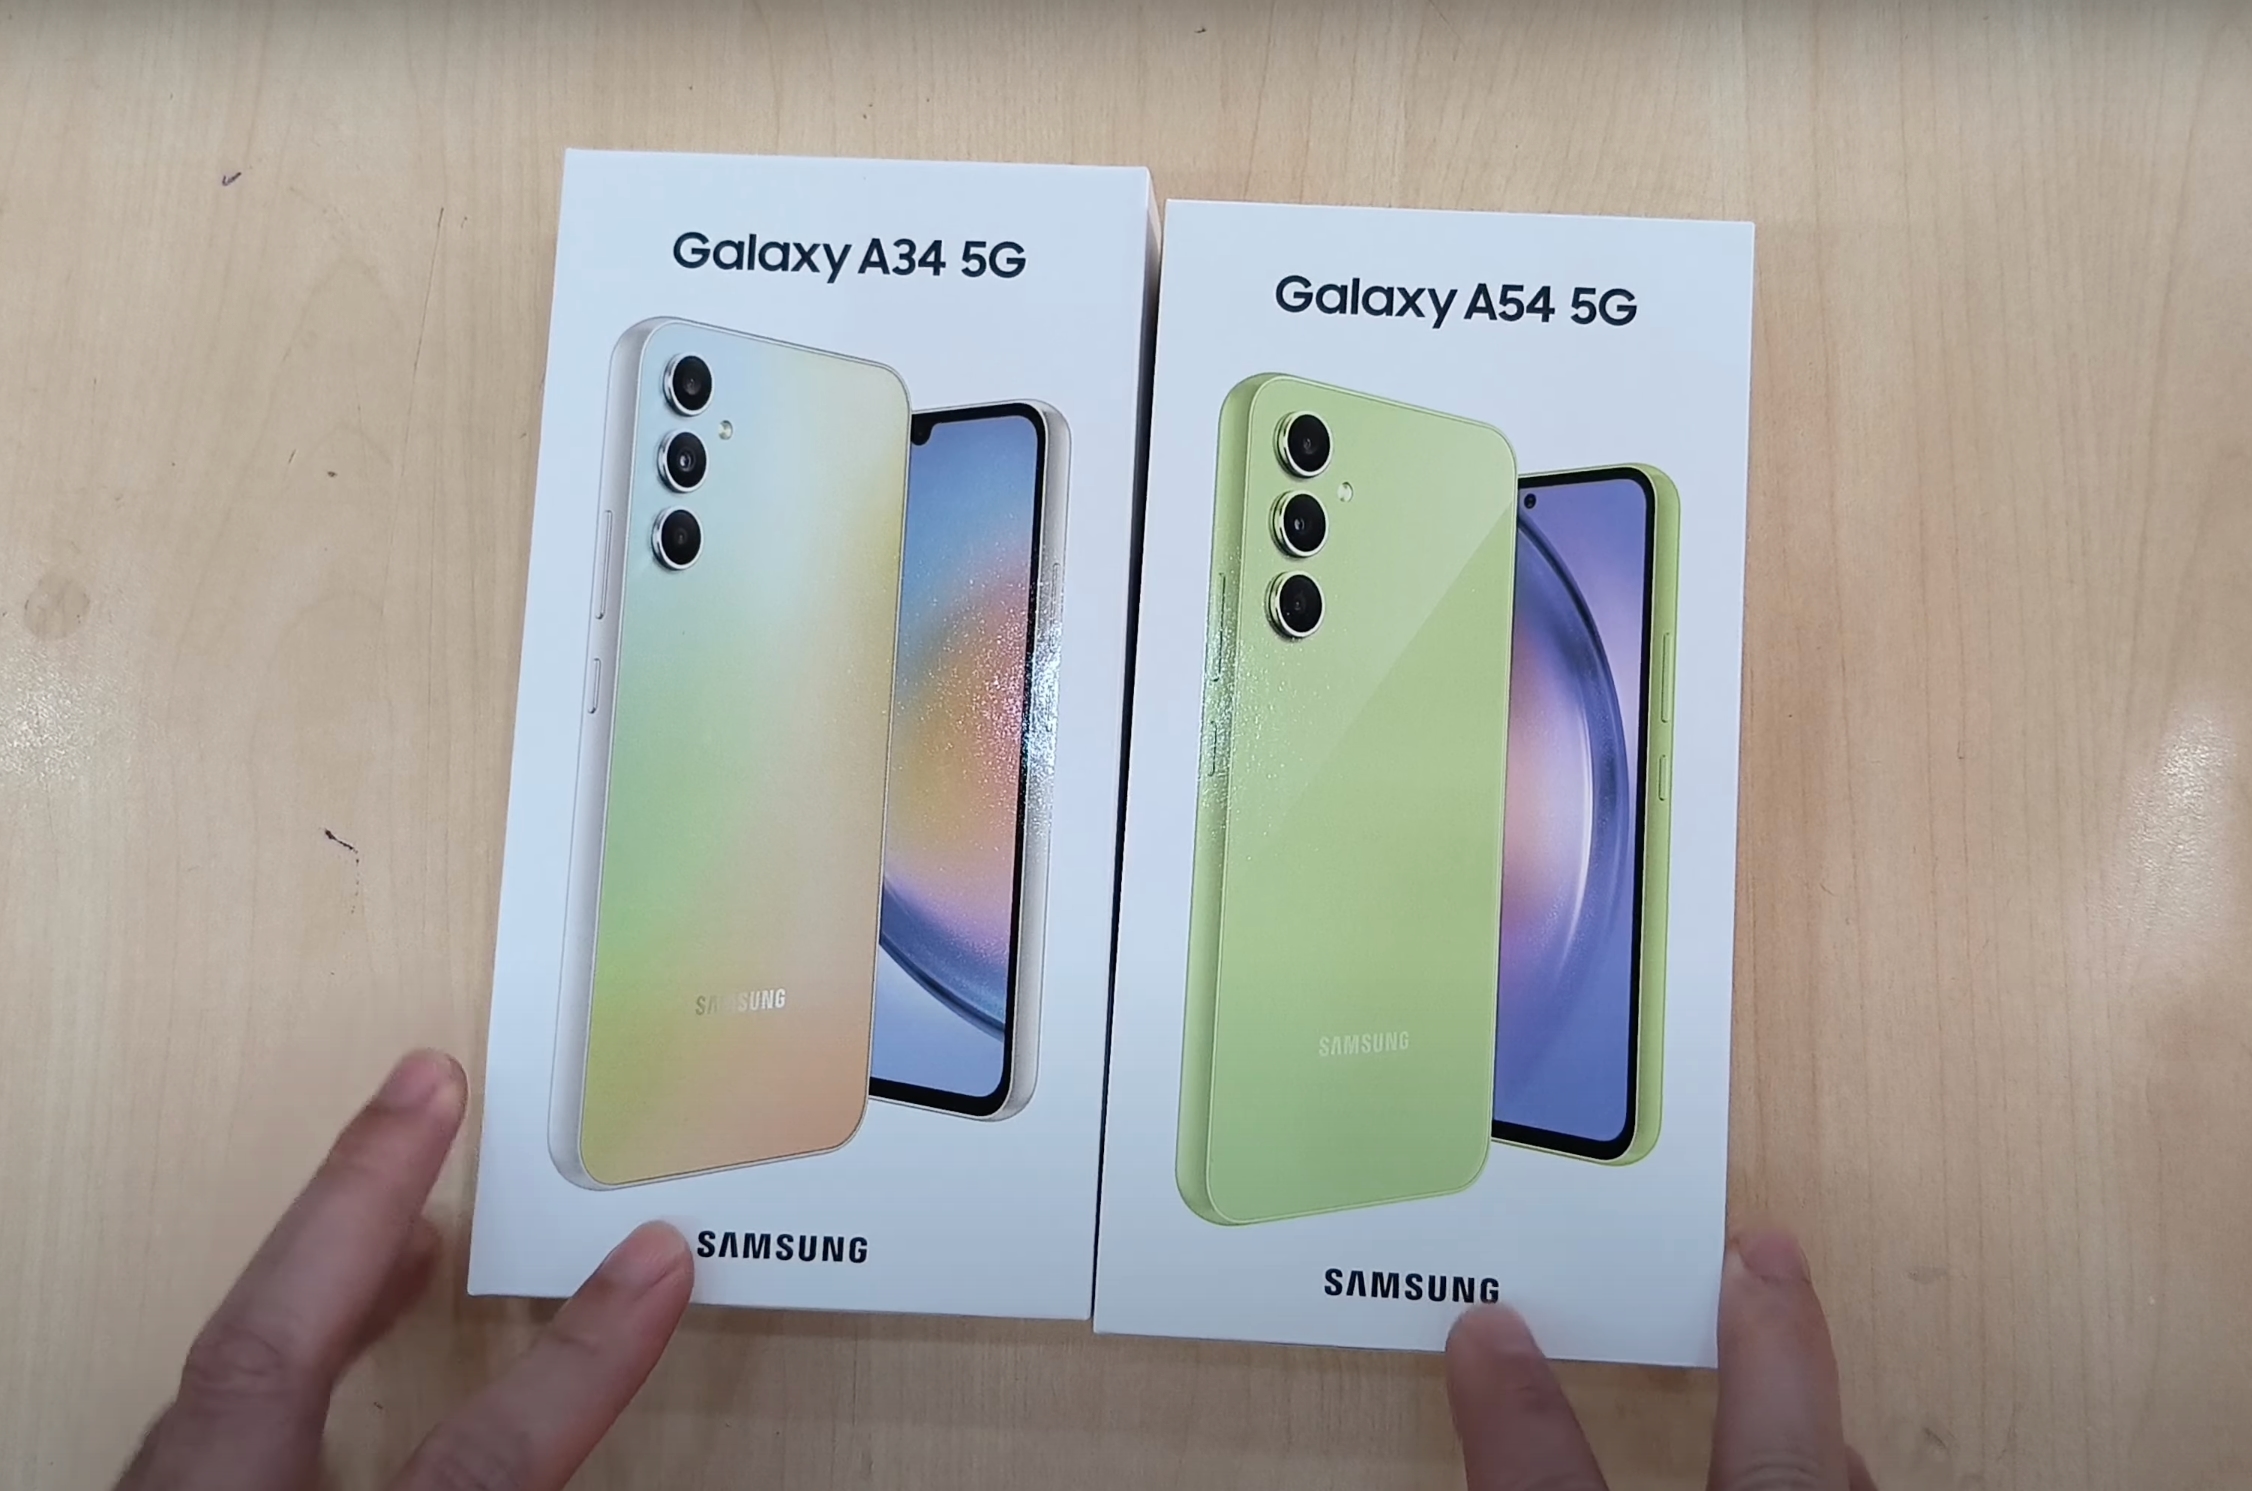 Trois jours avant la présentation : une vidéo du déballage des Galaxy A34 et Galaxy A54 a fait surface en ligne